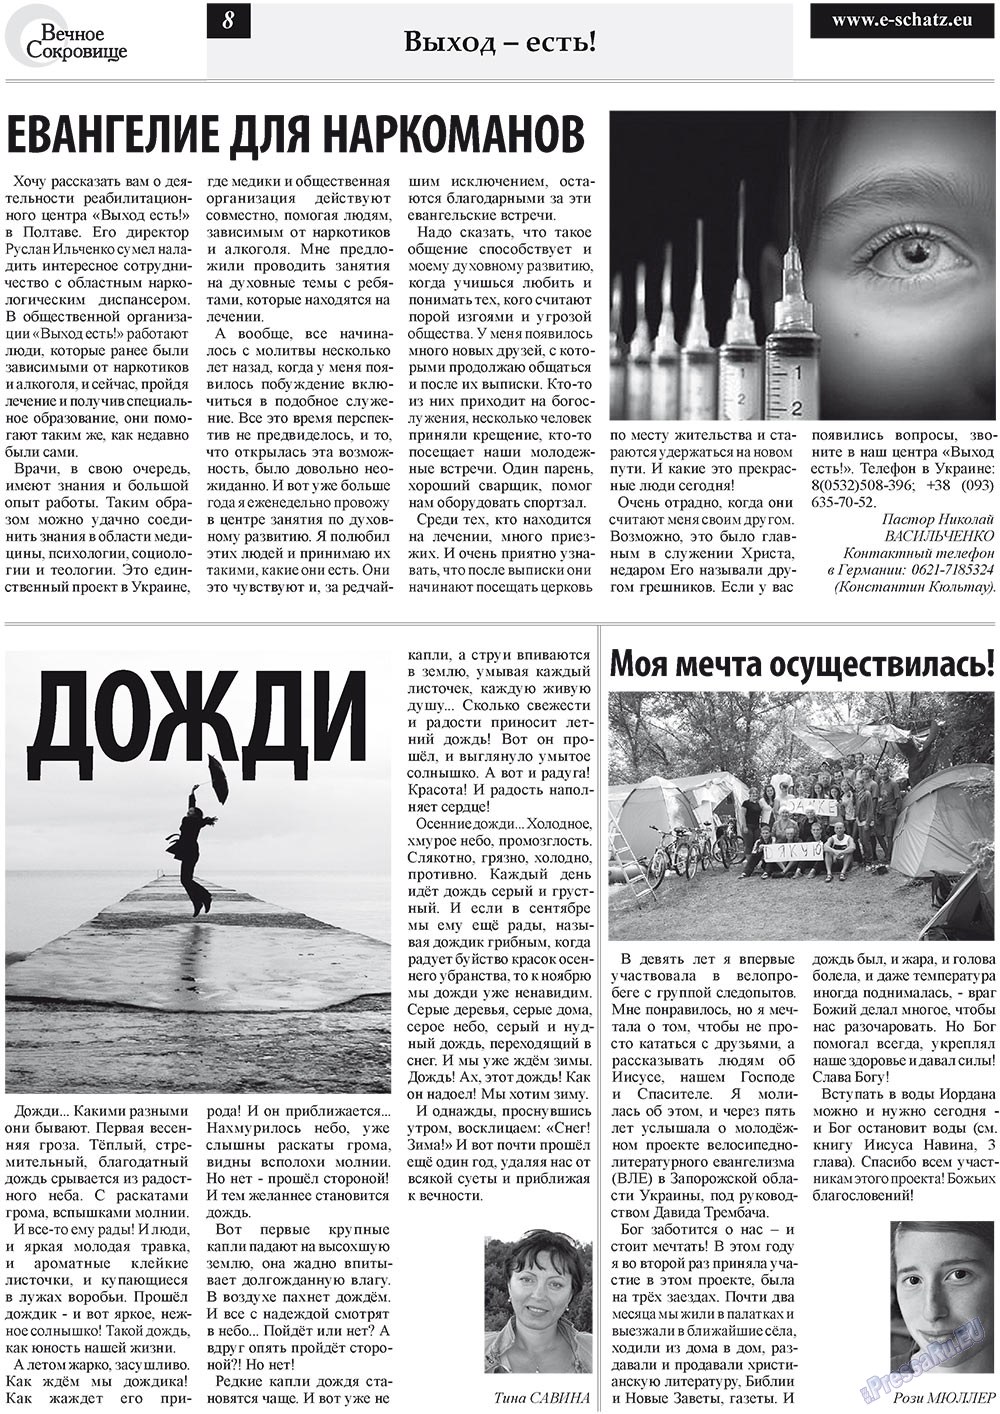 Вечное сокровище, газета. 2011 №5 стр.8